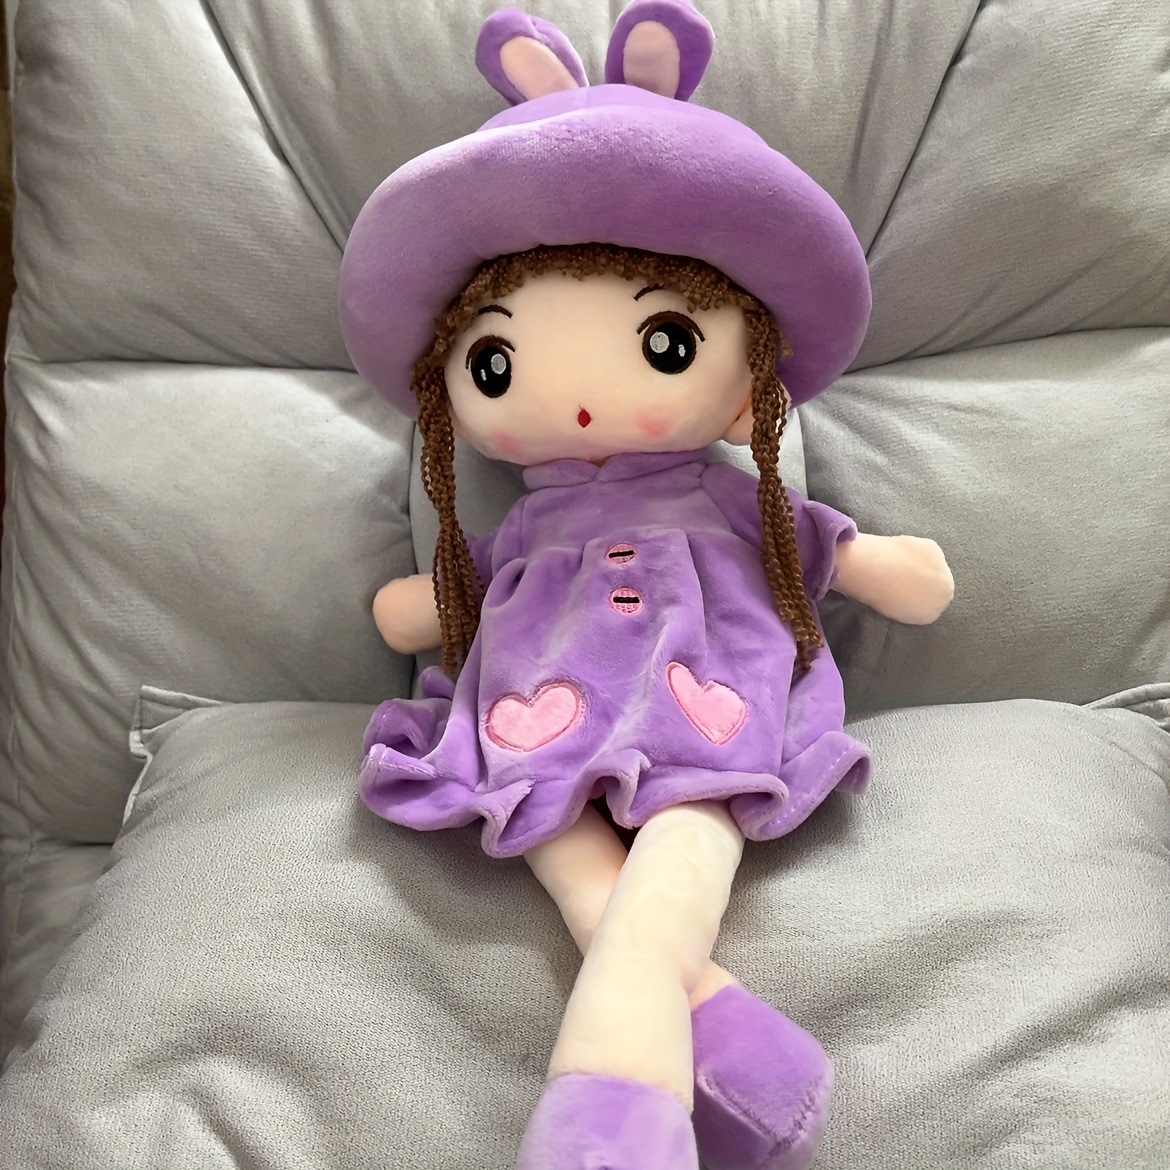 Boneca do bebê com roupas bonito macio pano boneca bonito ragdoll brinquedo  artesanal bonecas de pano do bebê meninas parceiro de dormir boneca  presente de natal - AliExpress